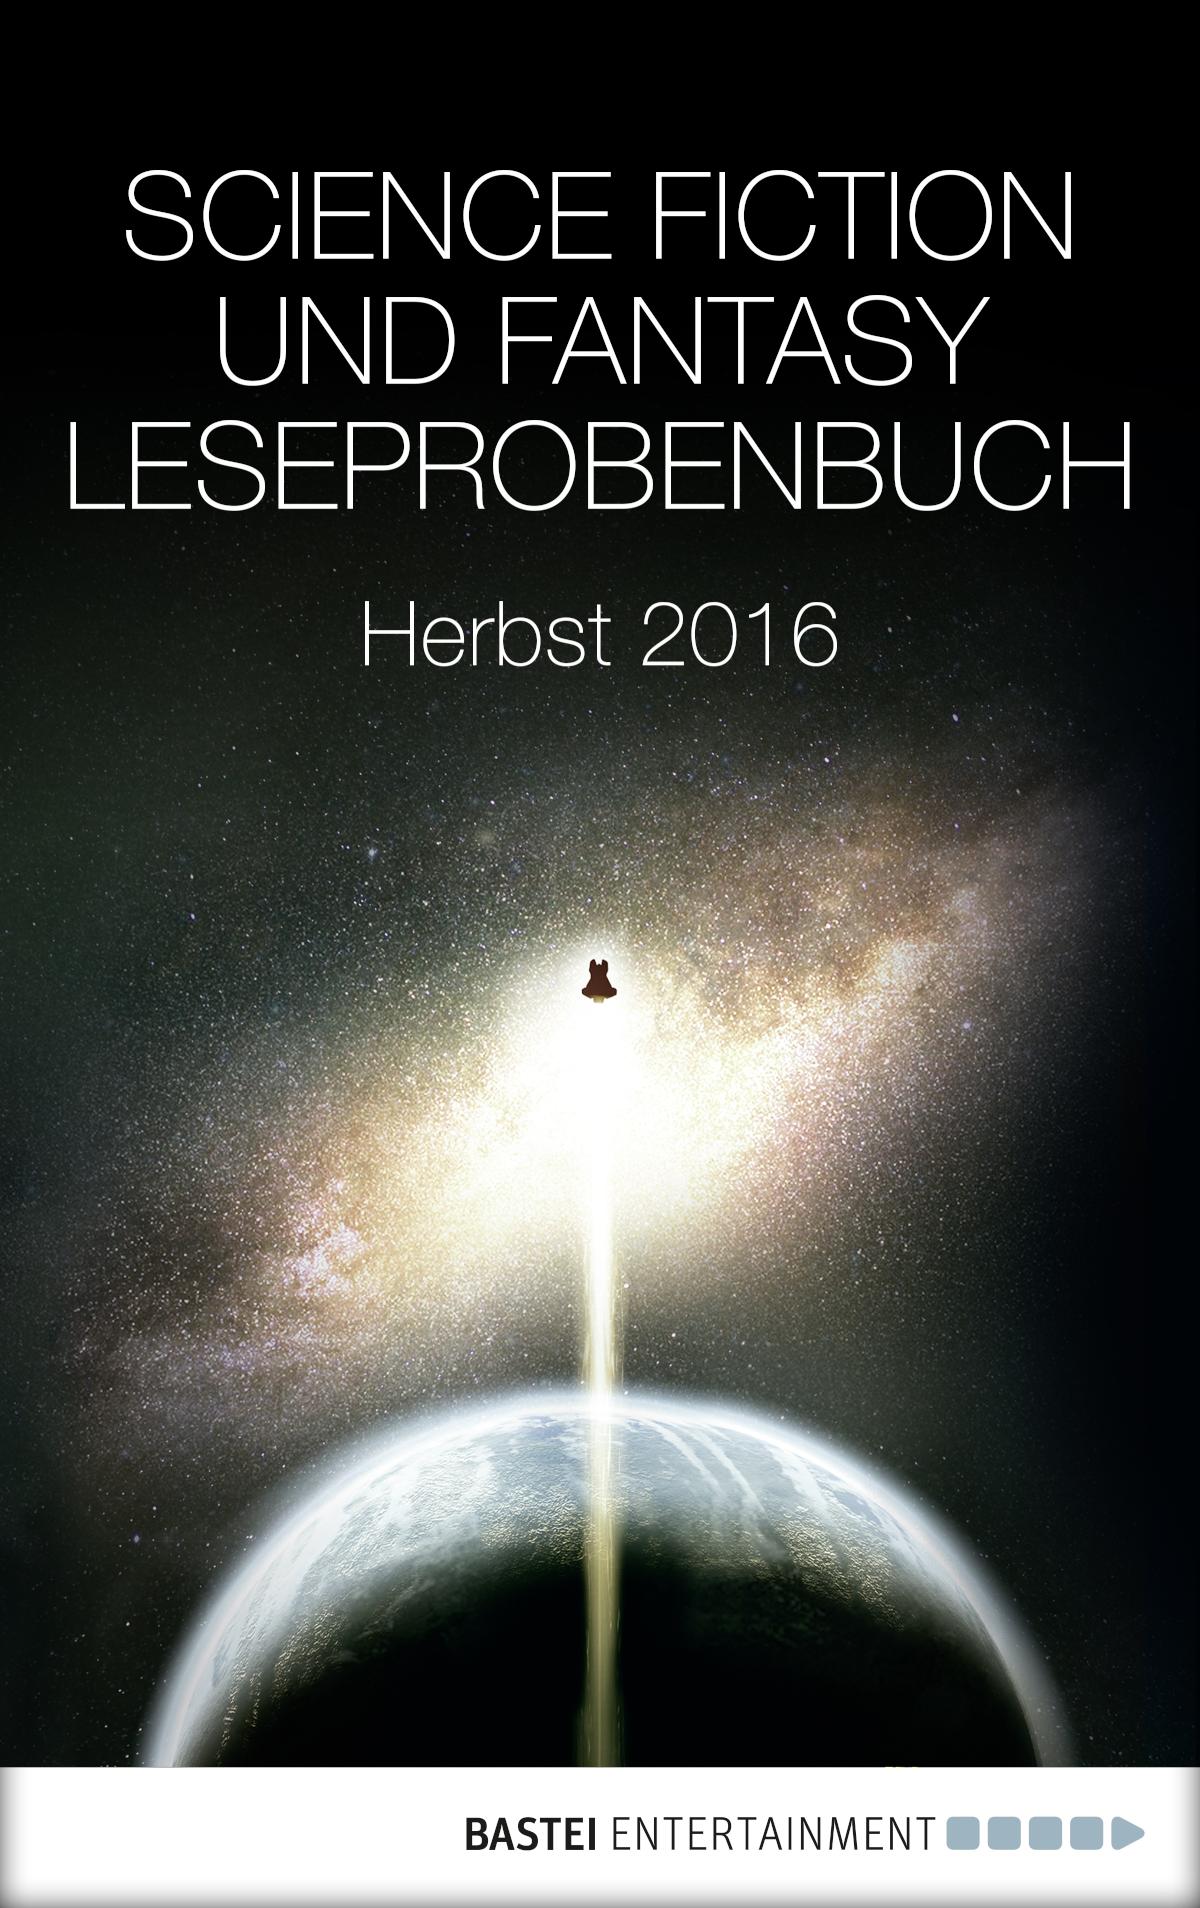 Science Fiction und Fantasy Leseprobenbuch Herbst 2016